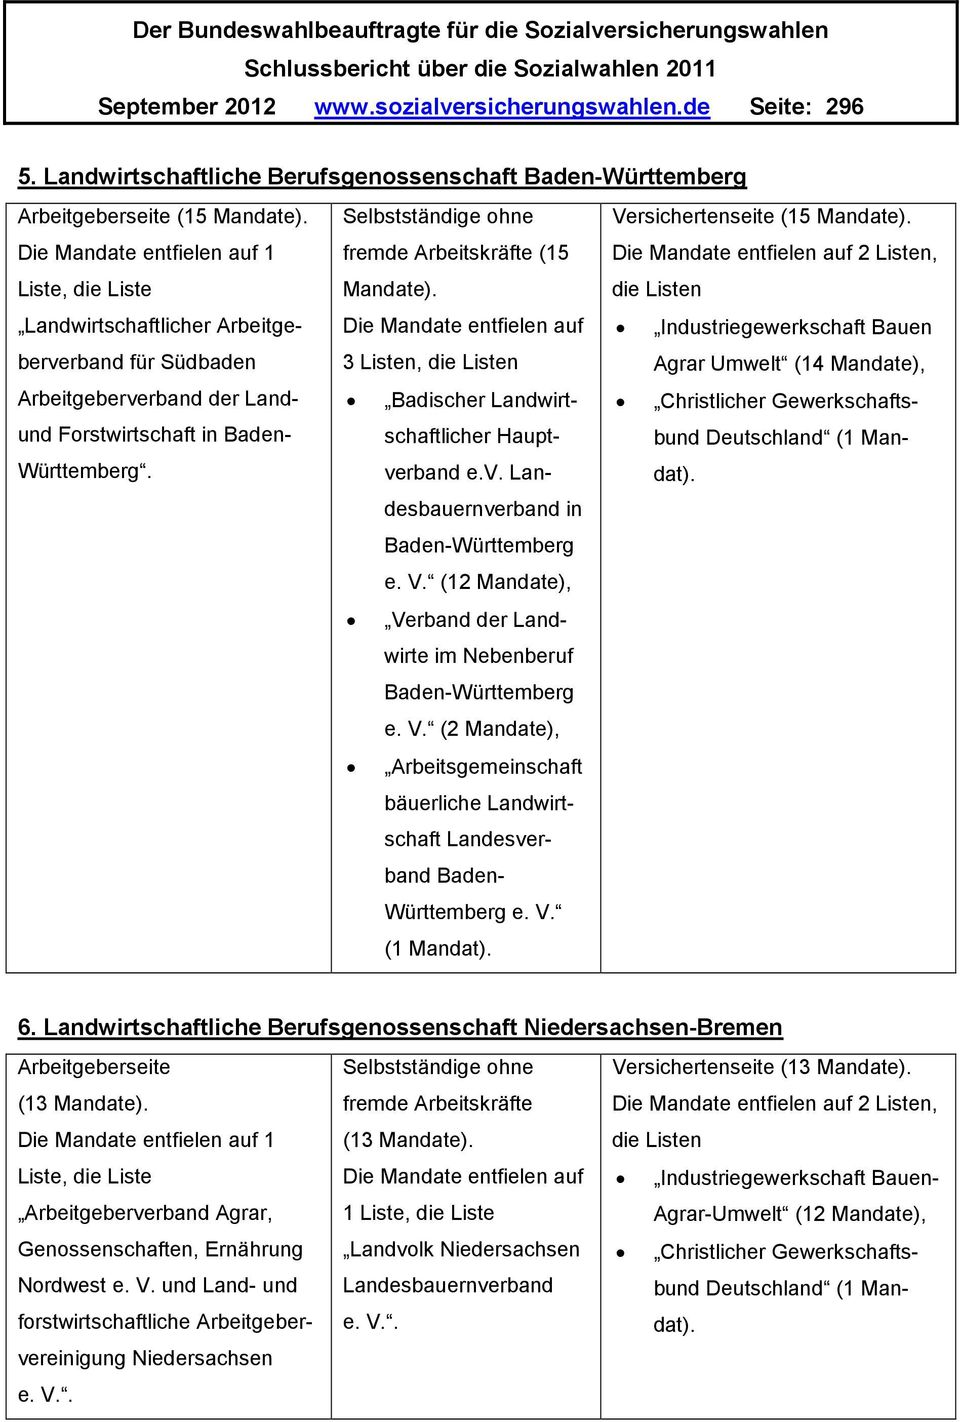 (15 Mandate). Die Mandate entfielen auf 3 Listen, die Listen Arbeitgeberverband der Landund Forstwirtschaft in Baden- Württemberg. Badischer Landwirtschaftlicher Hauptverband e.v. Landesbauernverband in Baden-Württemberg e.